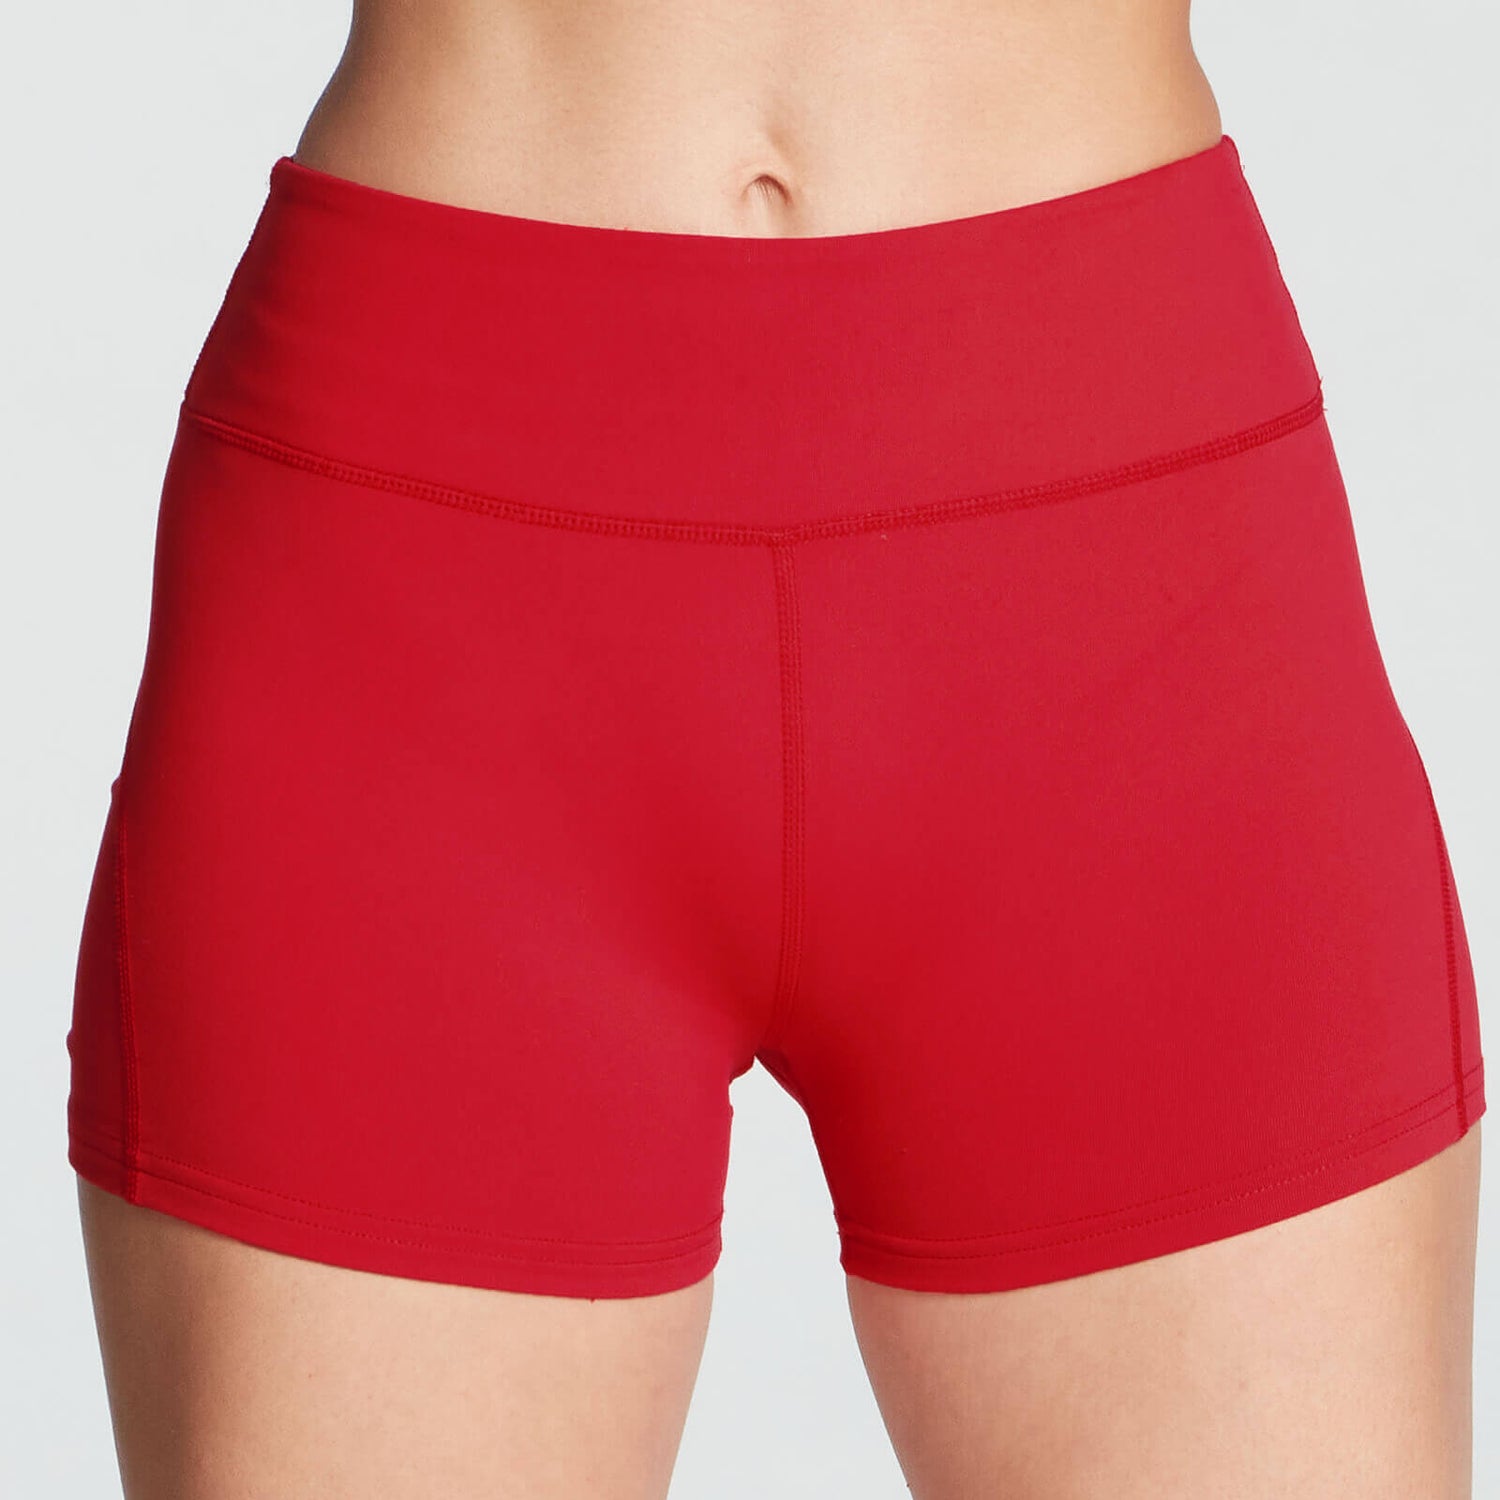 Power Shorts - Vörös - XL